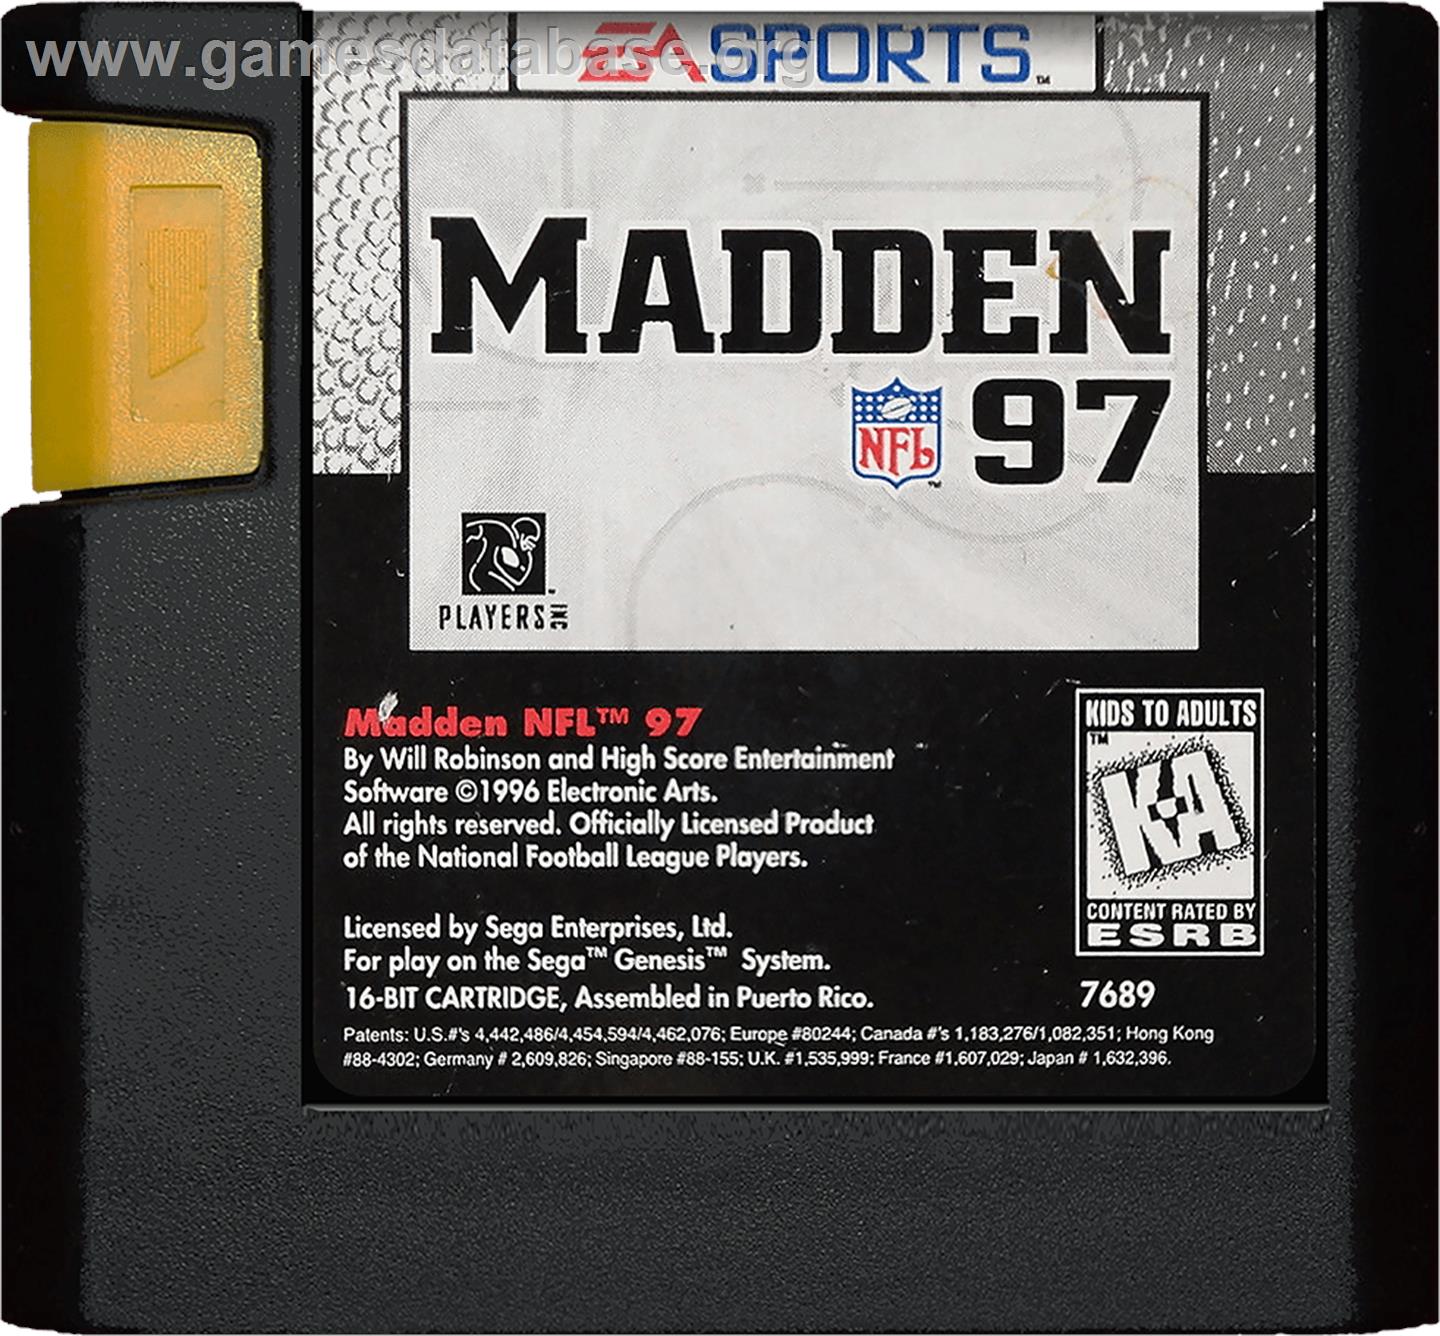 Madden NFL '97 - Sega Genesis - Artwork - Cartridge